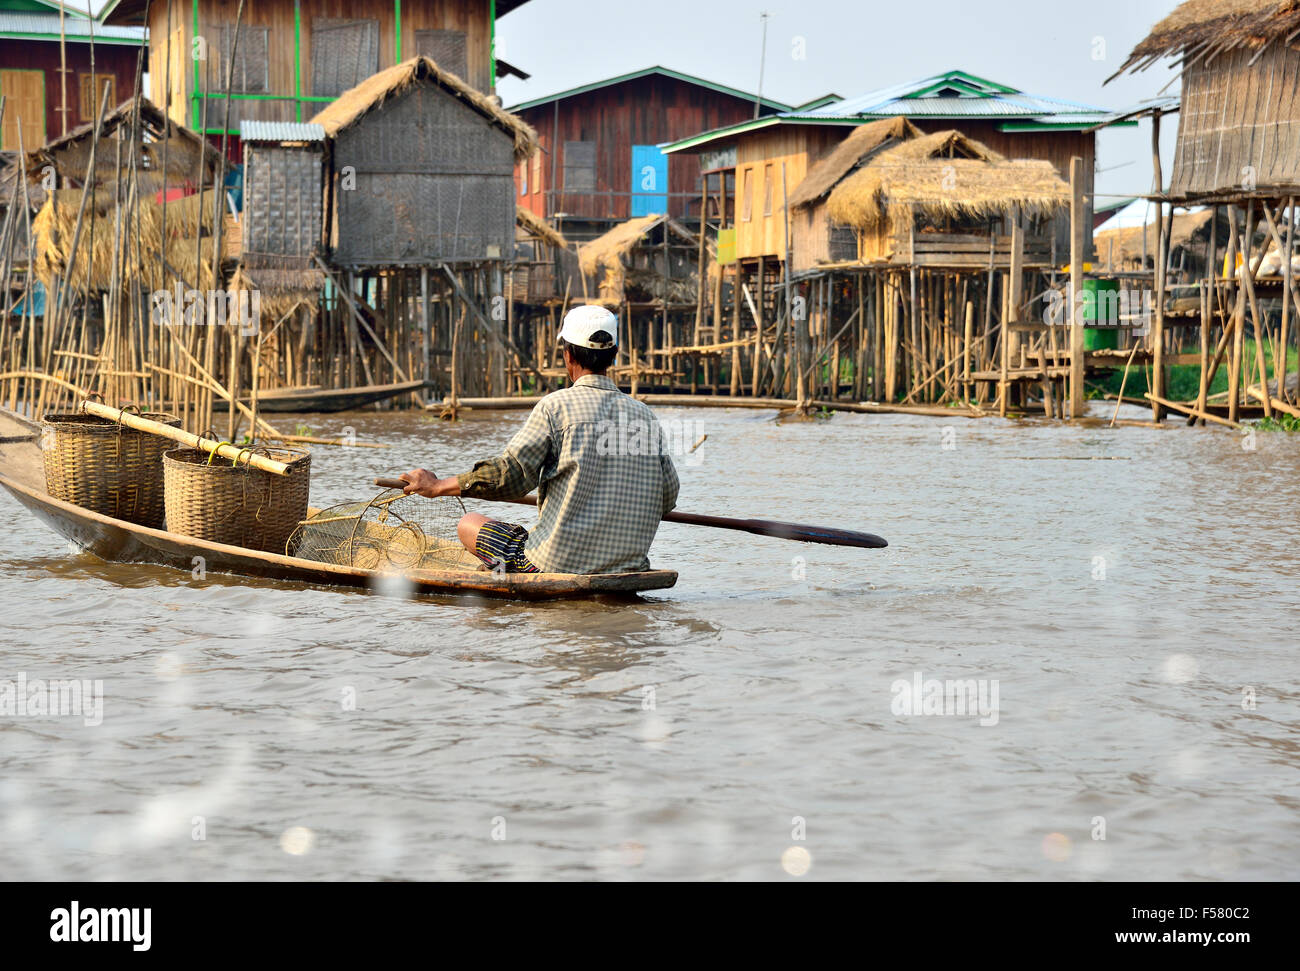 Ethnischen Minderheit Intha Fisheman paddeln kleine Kanu Typ Boot entlang der Wasserstraßen zwischen Stelzenläufer Häuser, Inle-See, Shan State in Myanmar Stockfoto